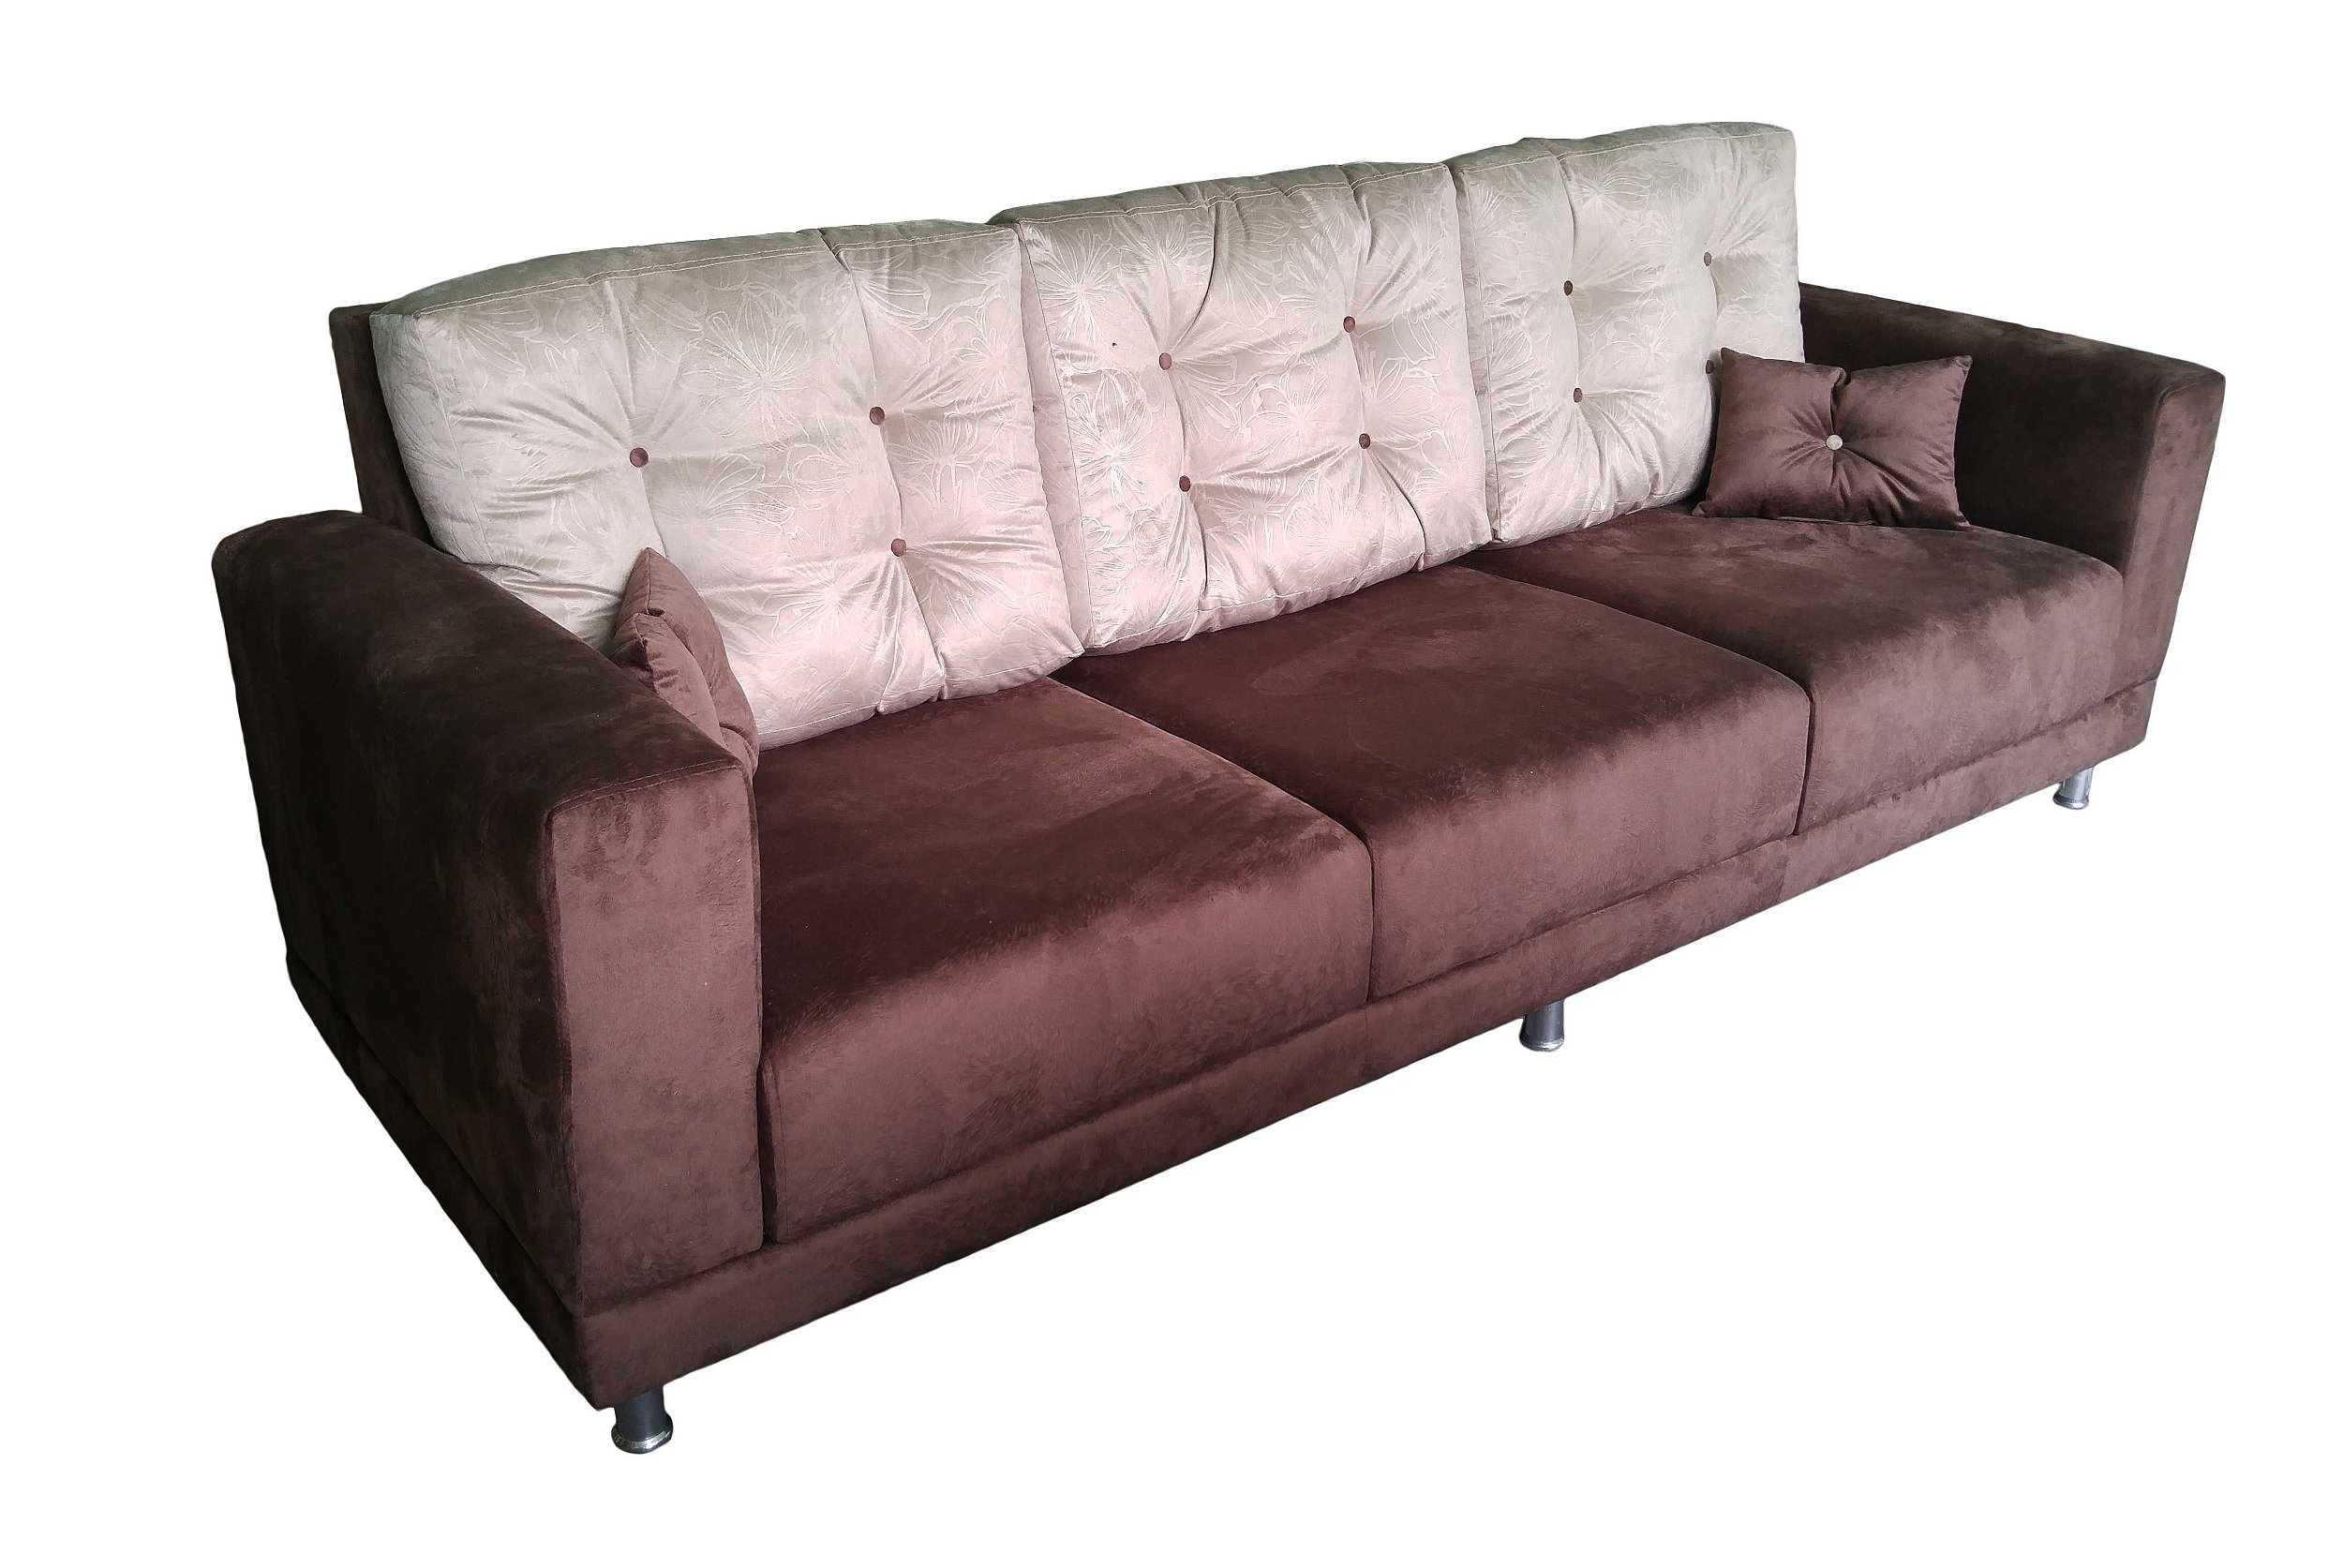 Sofá com duas cores (compose) , almofadas móveis, pés de alumínio,  produzido sob medida. Lv Estofados - Lv Estofados